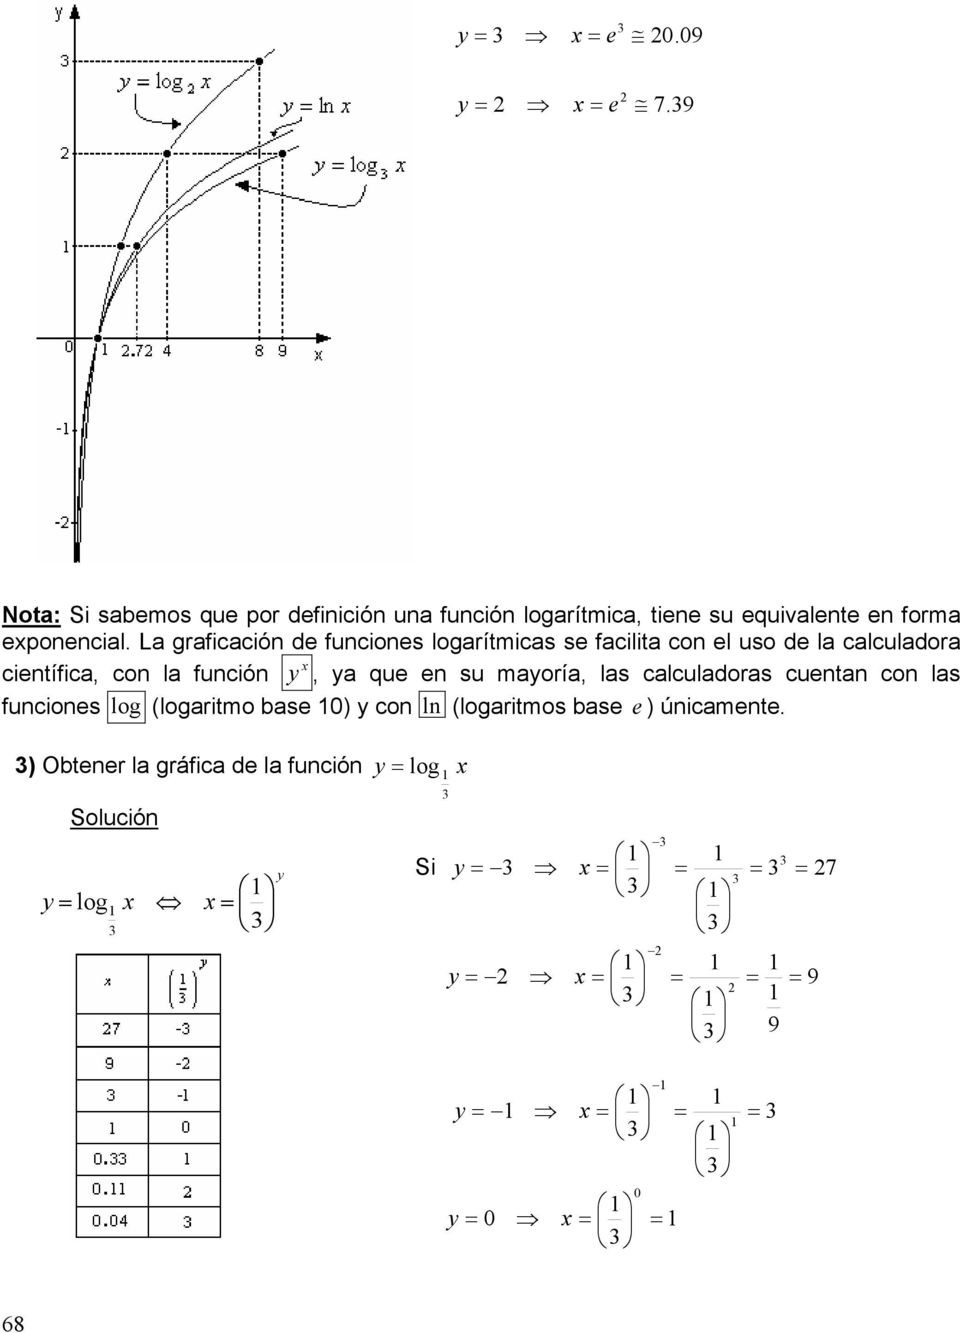 La graficación d funcions logarítmicas s facilita con l uso d la calculadora cintífica, con